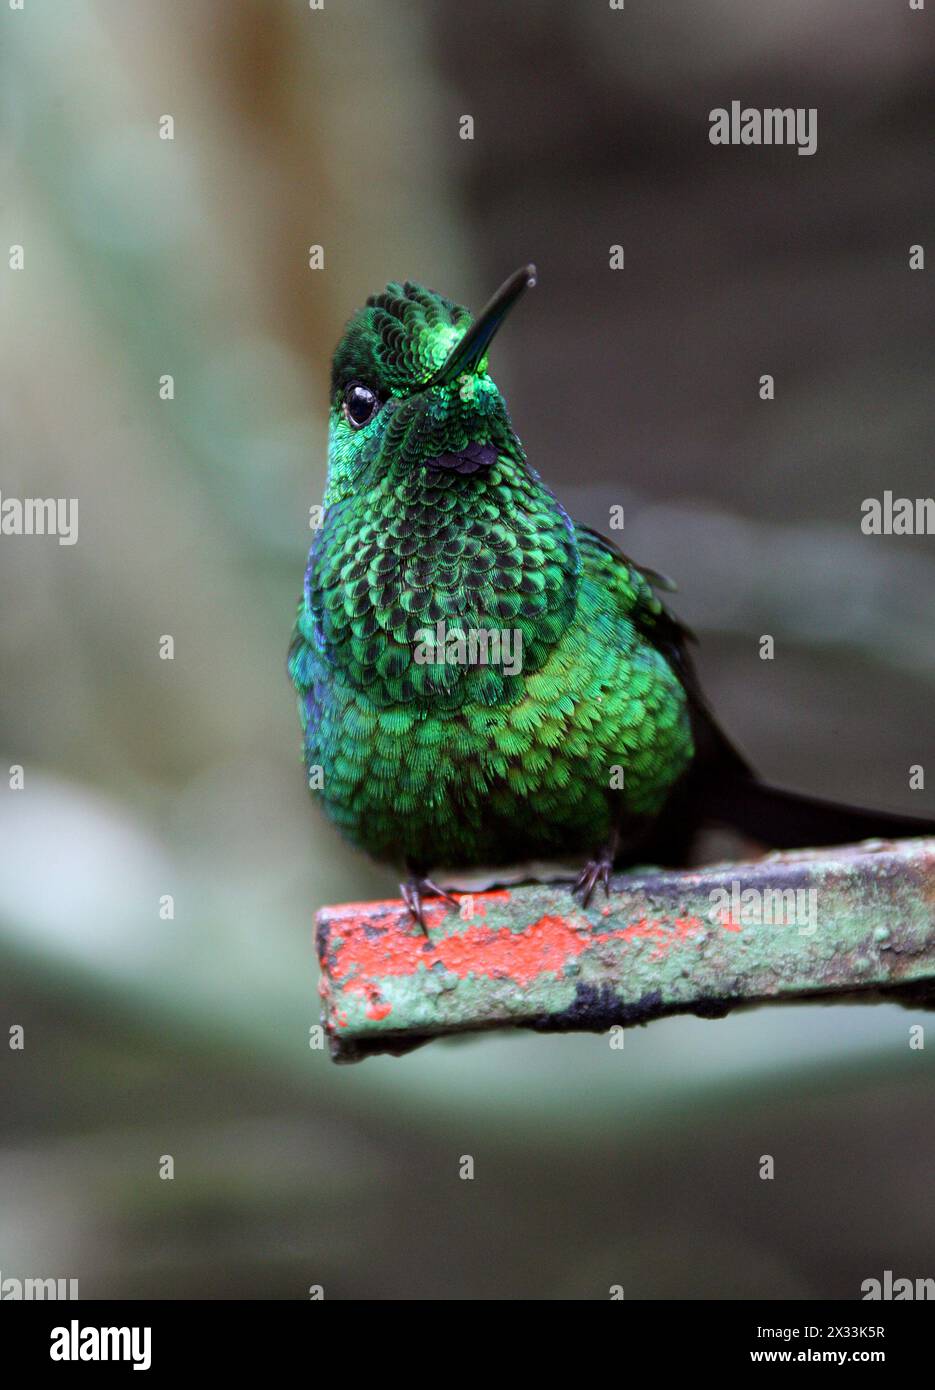 Männlich, grün gekrönt, brillant, Heliodoxa jacula, Trochilidae. Monteverde, Costa Rica. Ein großer, robuster Kolibri. Stockfoto